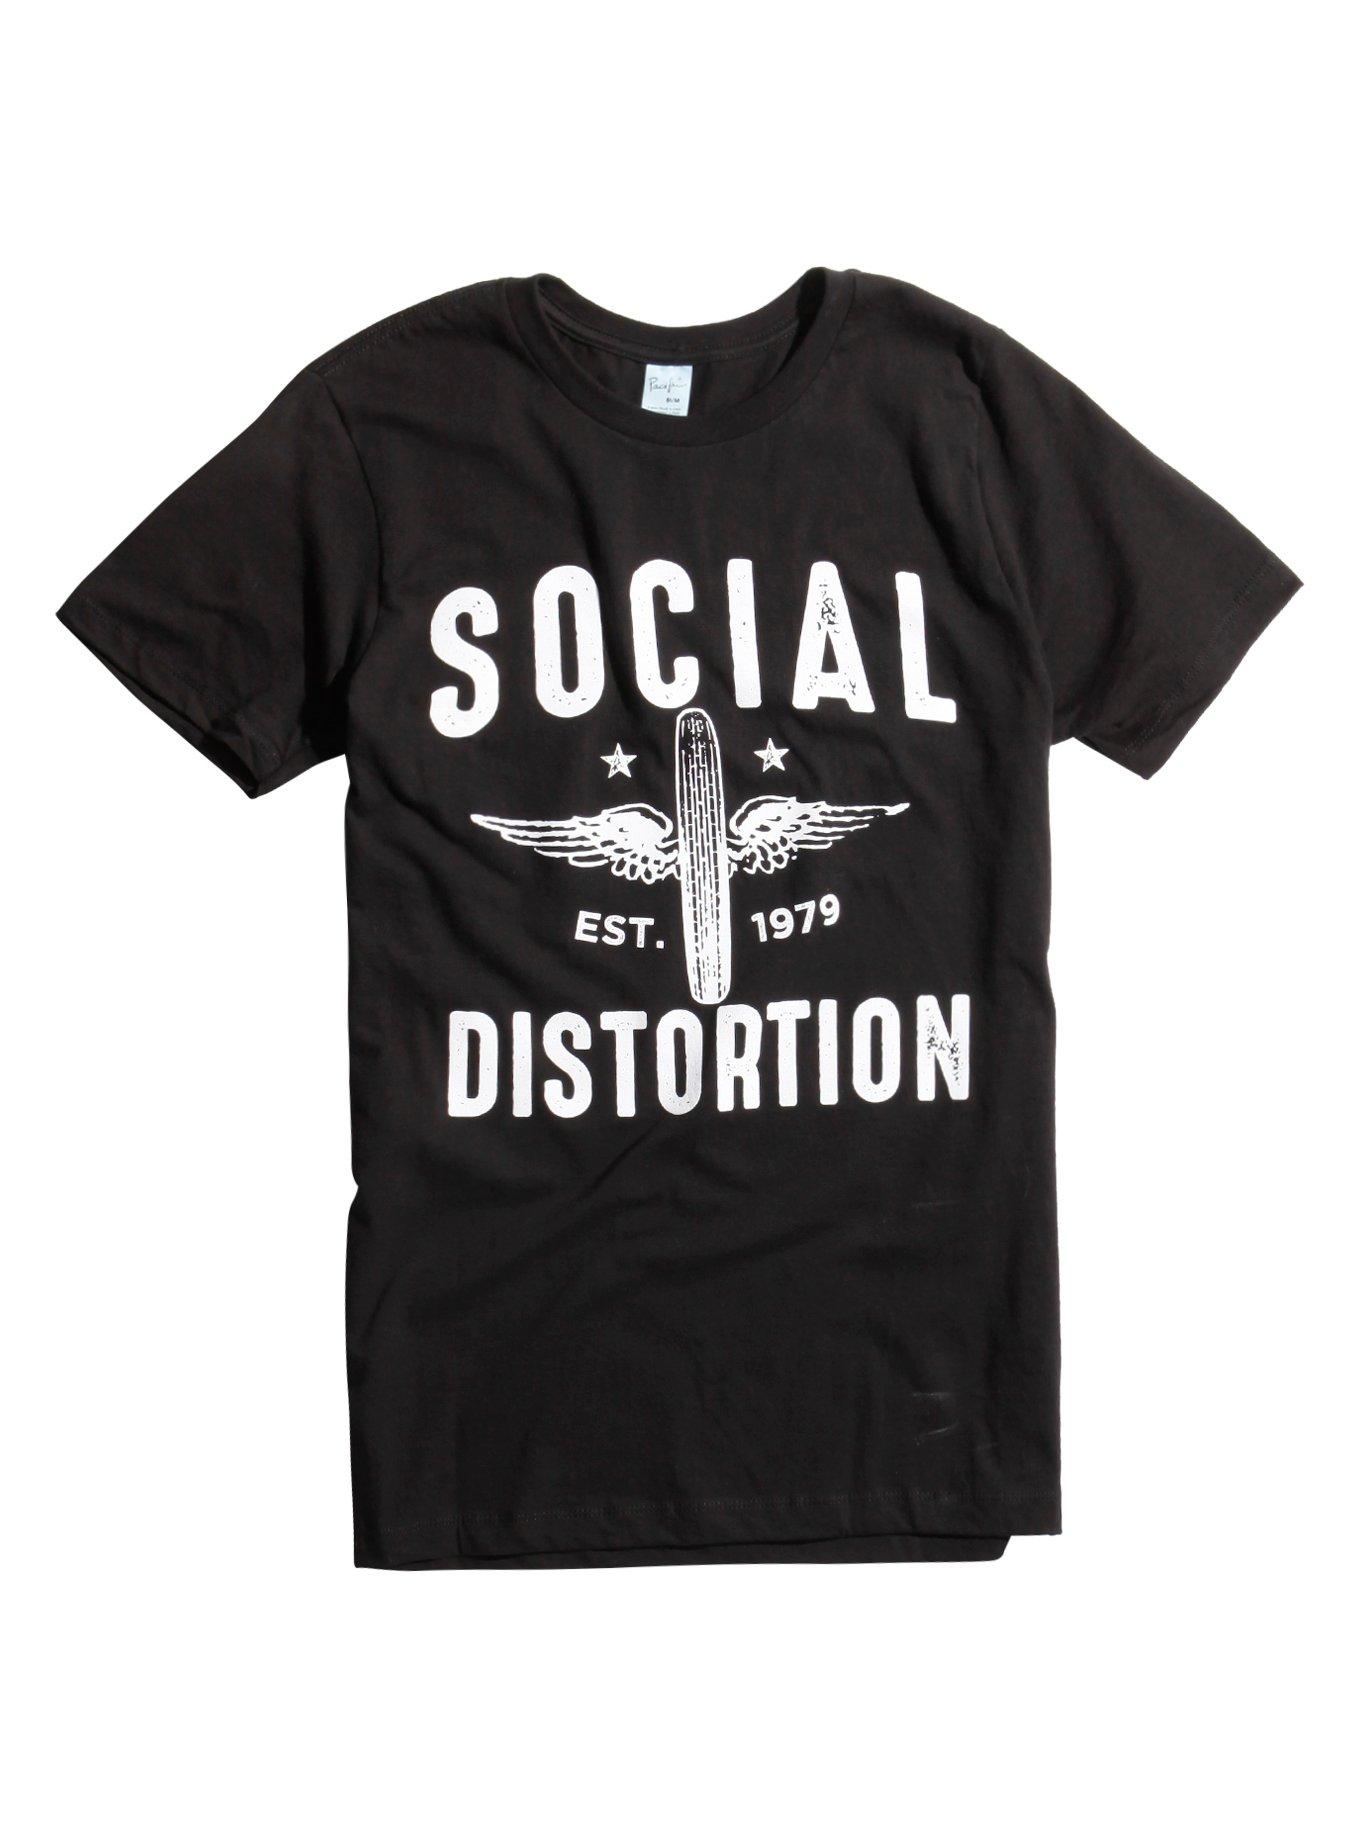 Social Distortion Est. 1979 T-Shirt, BLACK, hi-res